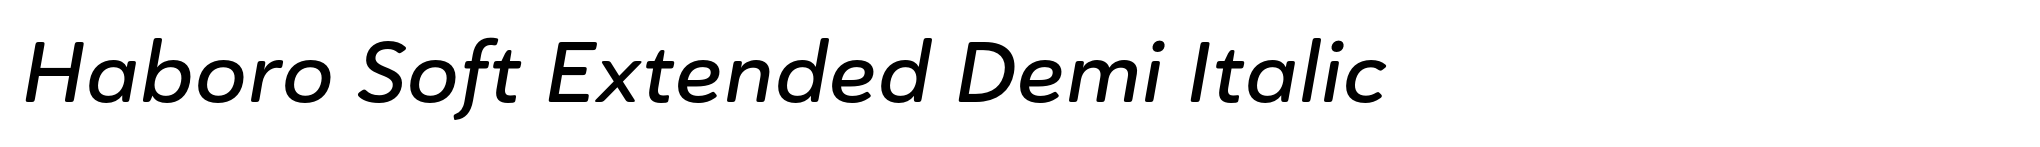 Haboro Soft Extended Demi Italic image